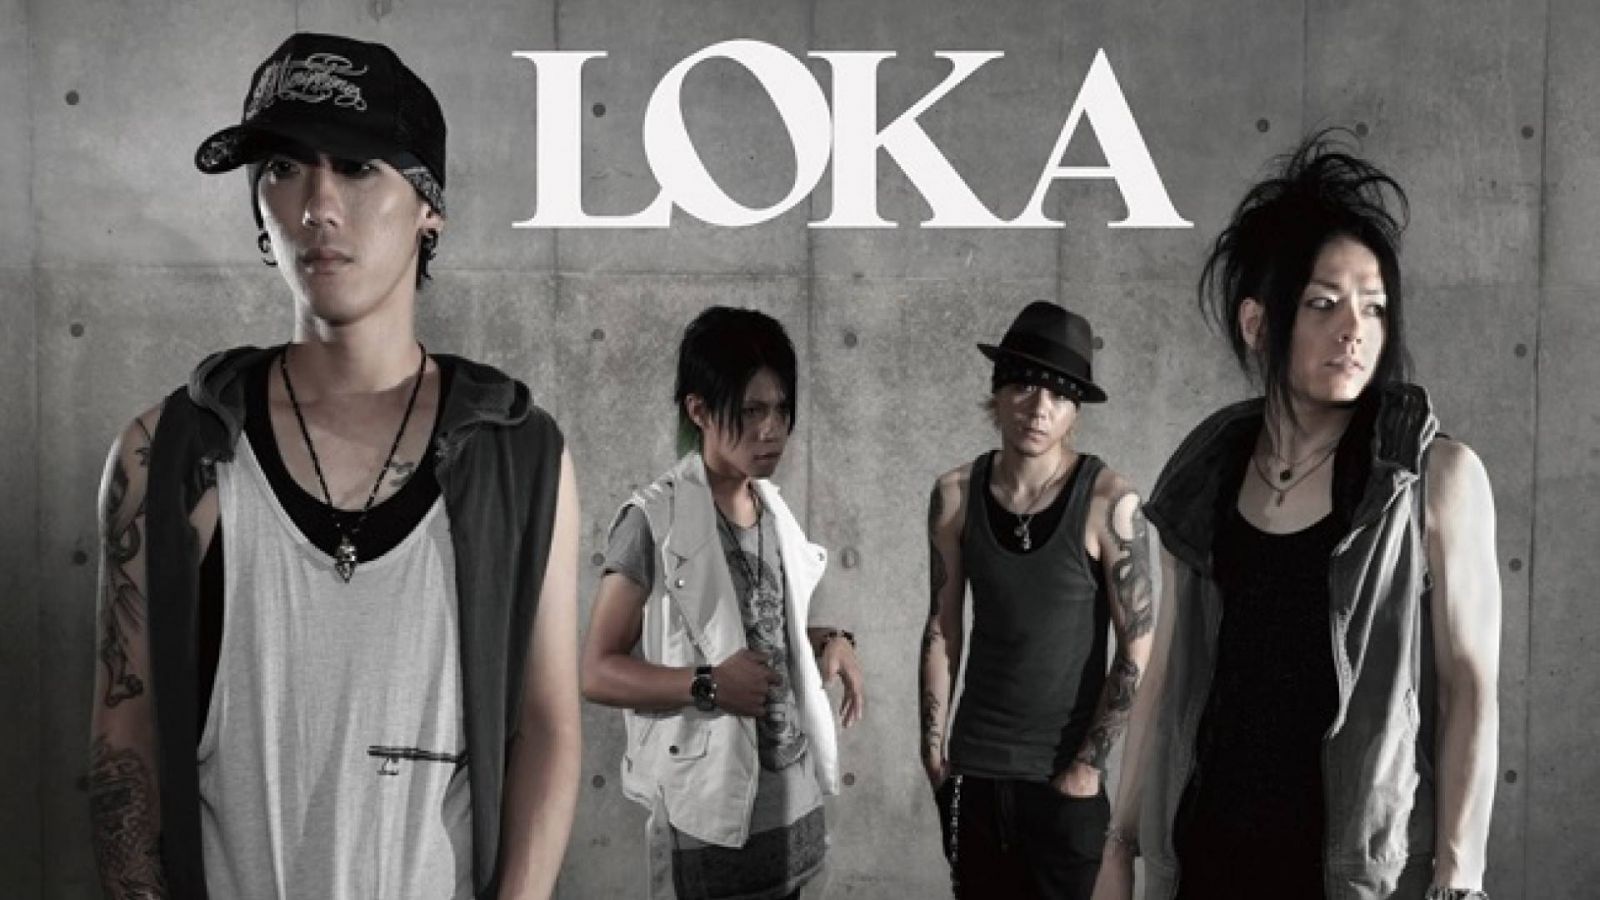 Des changements dans la tournée européenne de LOKA © LOKA